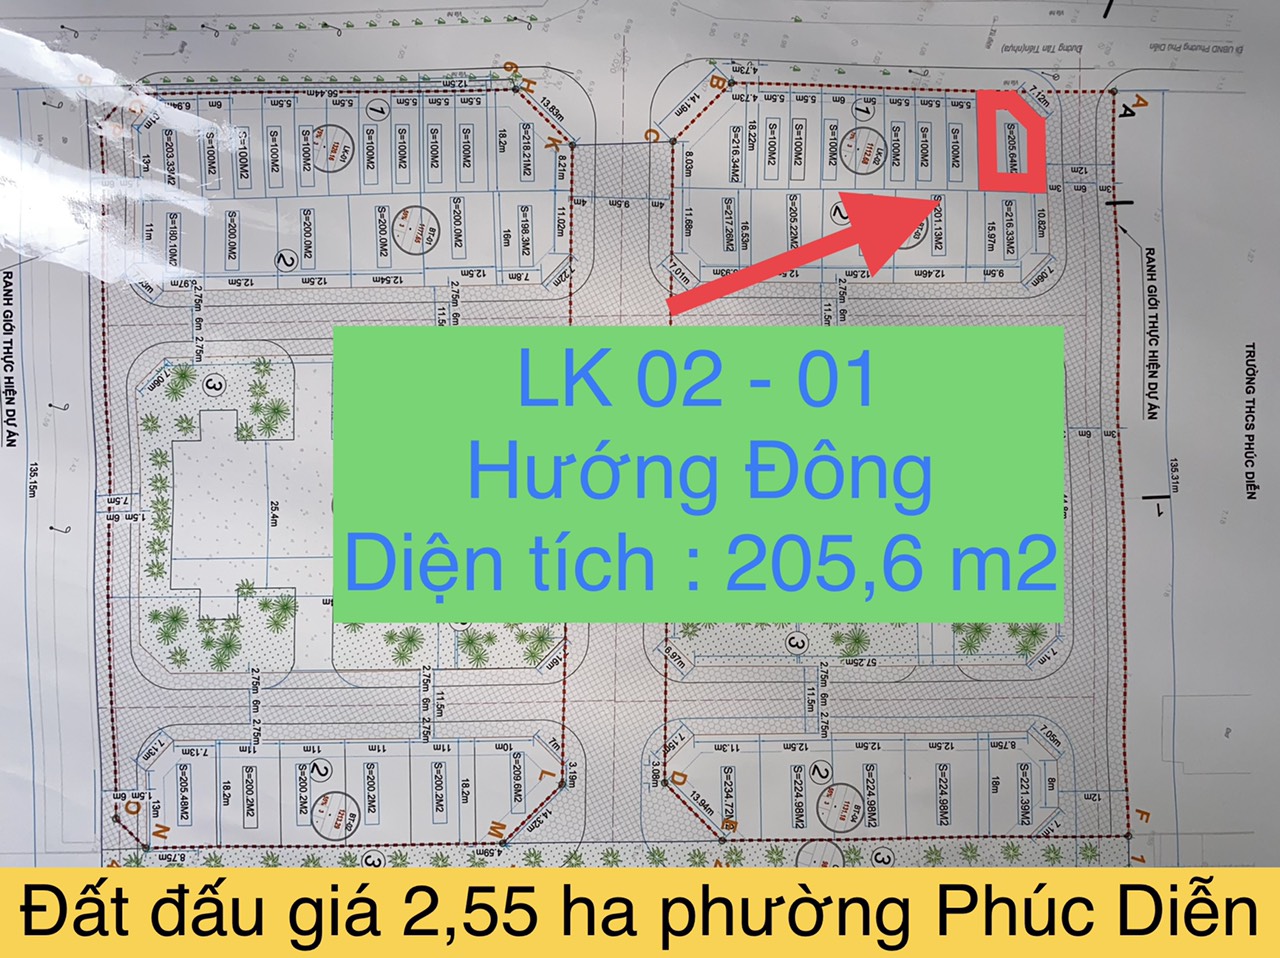 LK02-01 đất đáu giá 2,55 ha phường Phúc Diễn.